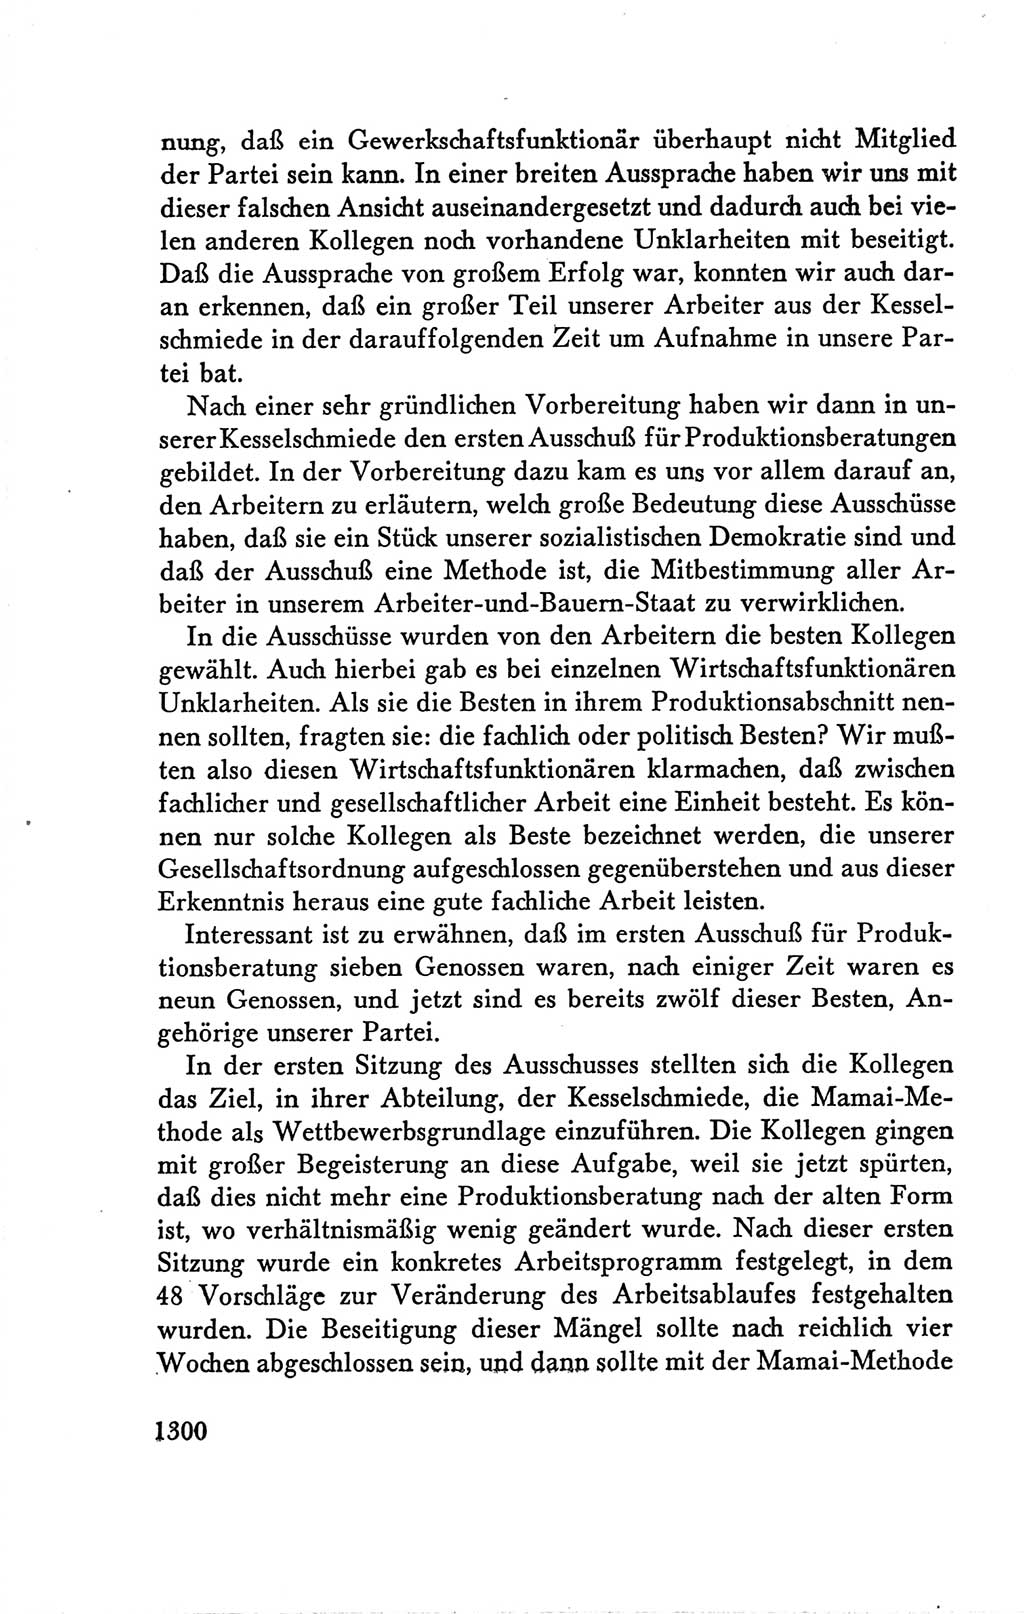 Protokoll der Verhandlungen des Ⅴ. Parteitages der Sozialistischen Einheitspartei Deutschlands (SED) [Deutsche Demokratische Republik (DDR)] 1958, Seite 1300